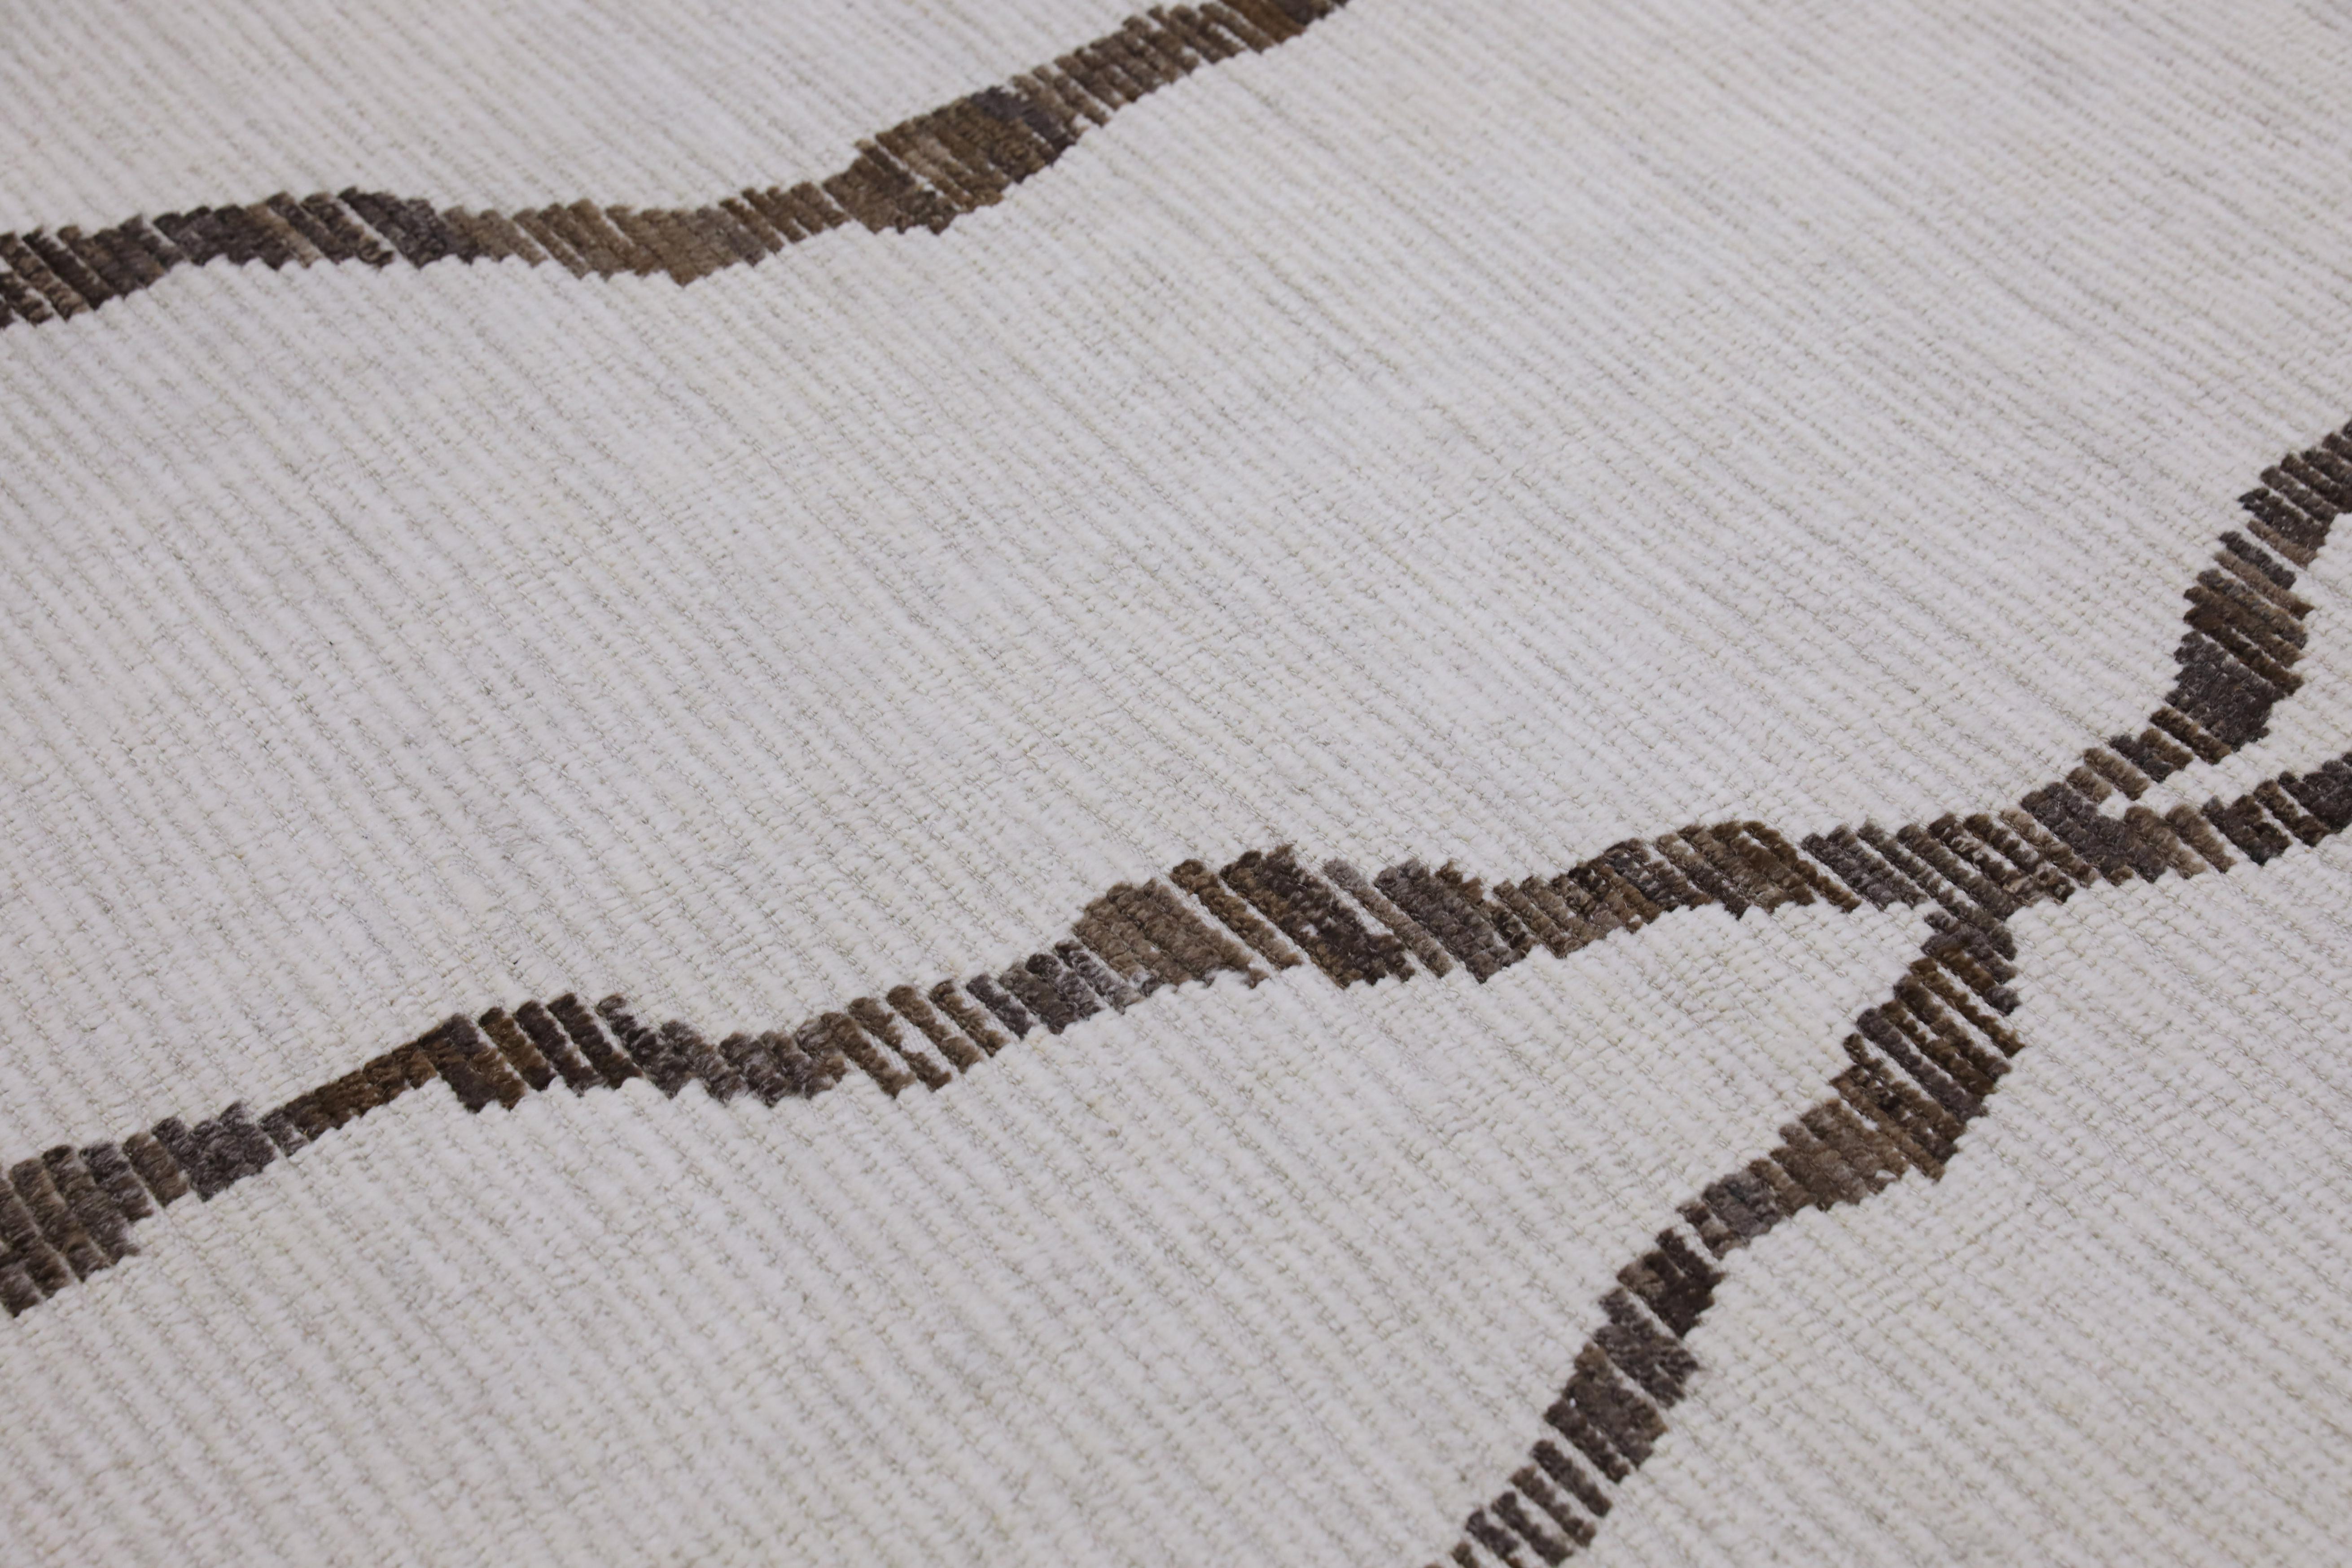  Handmade Wool Tulu Rug in Geometric Design 9'1